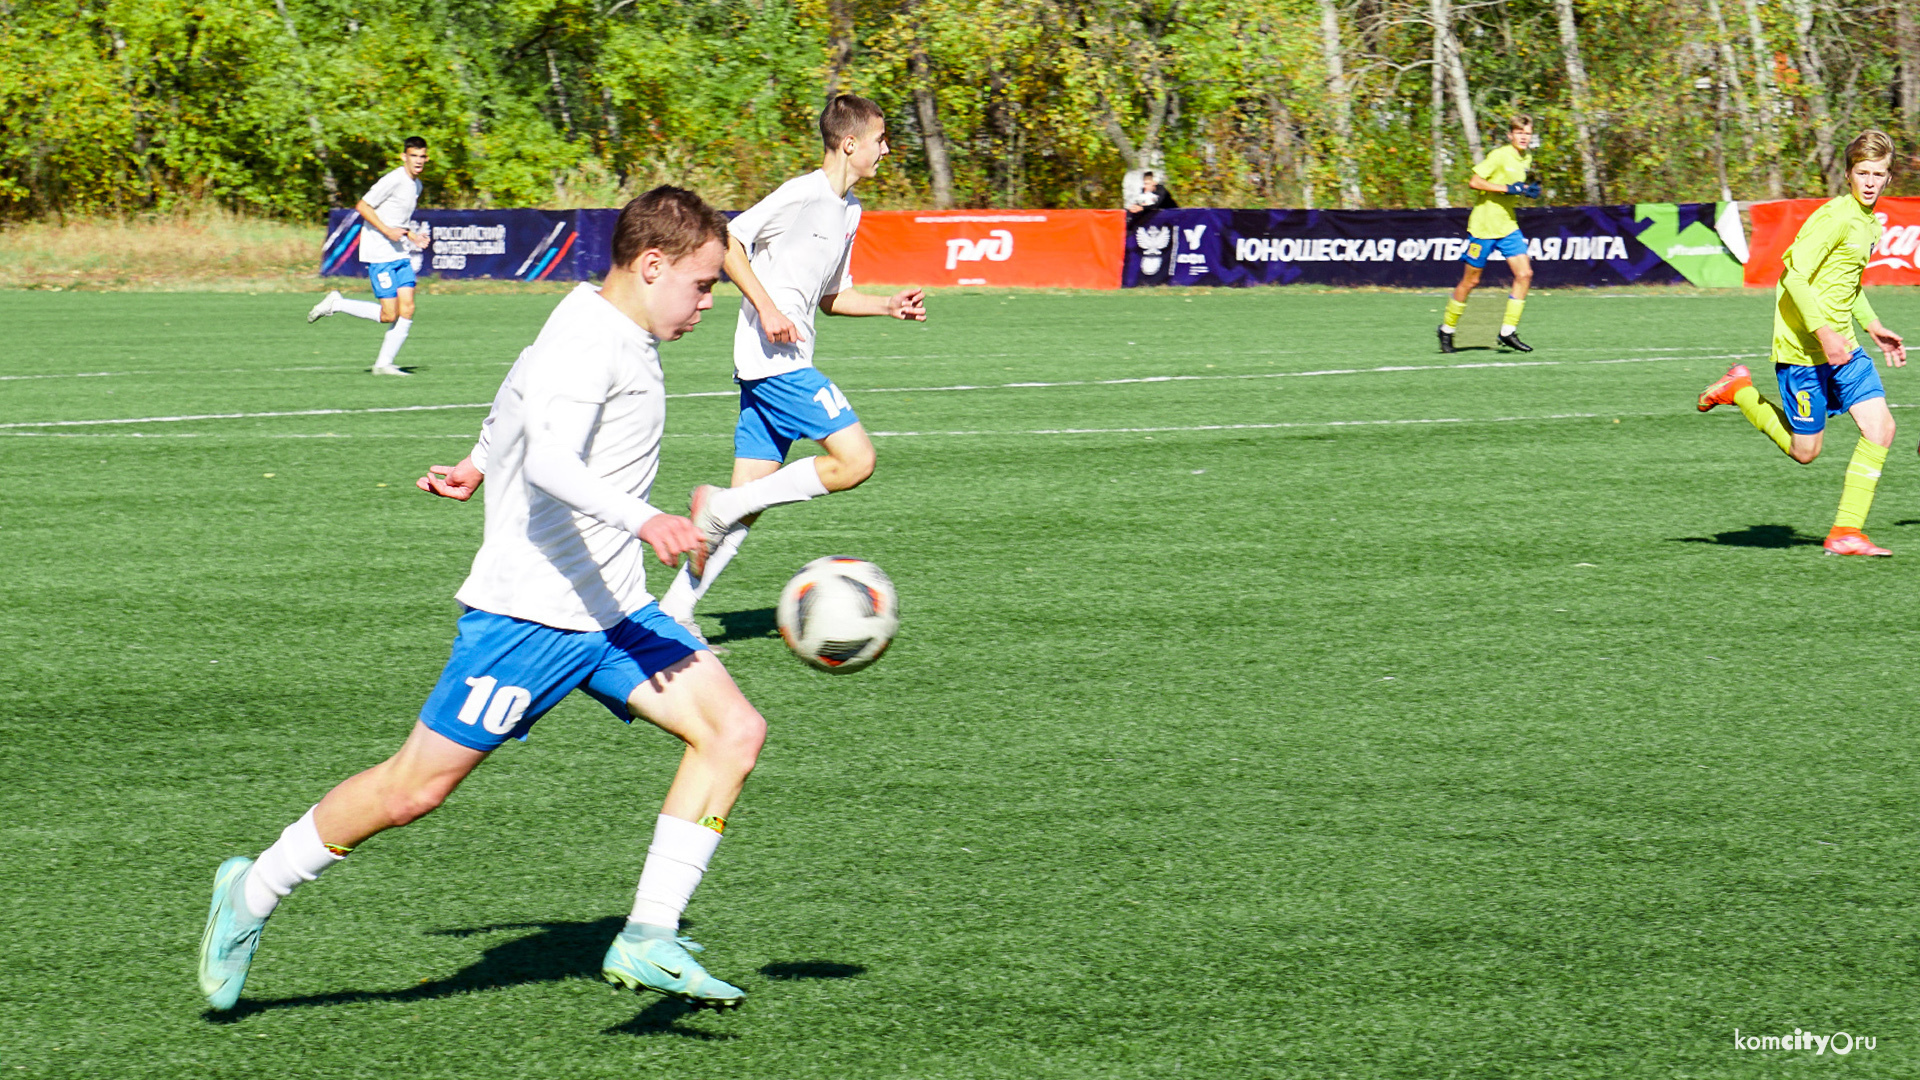 Обе команды Комсомольской-на-Амуре СШОР-2 проиграли Владивостоку в очередных матчах Дальневосточной юношеской лиги